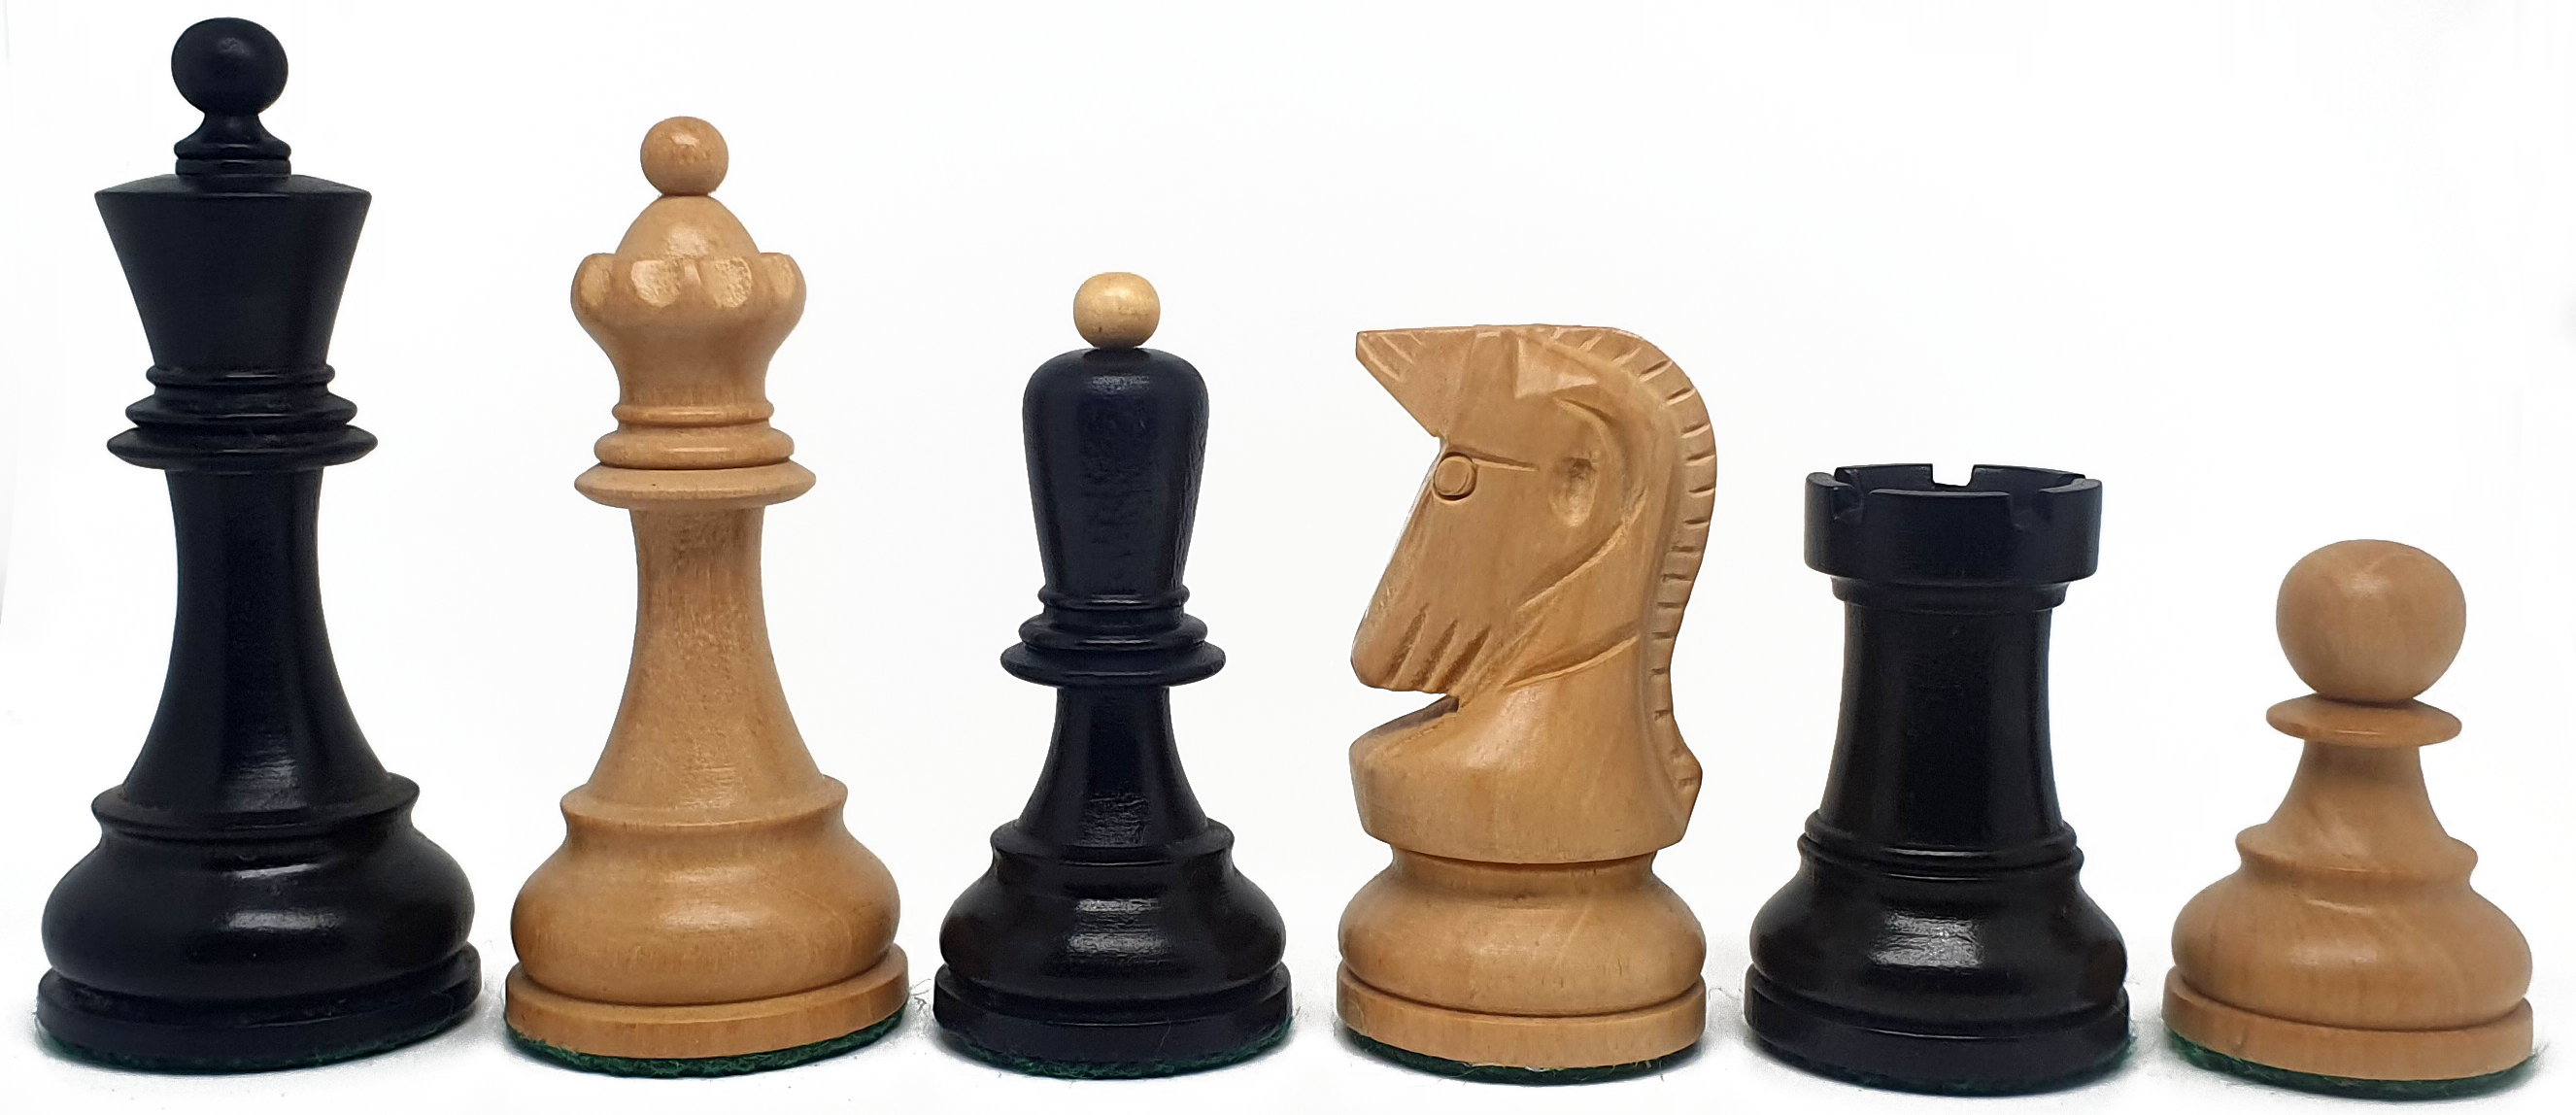 VI/ Piezas de ajedrez modelo Dubrovnik "3.50" Ebanizado